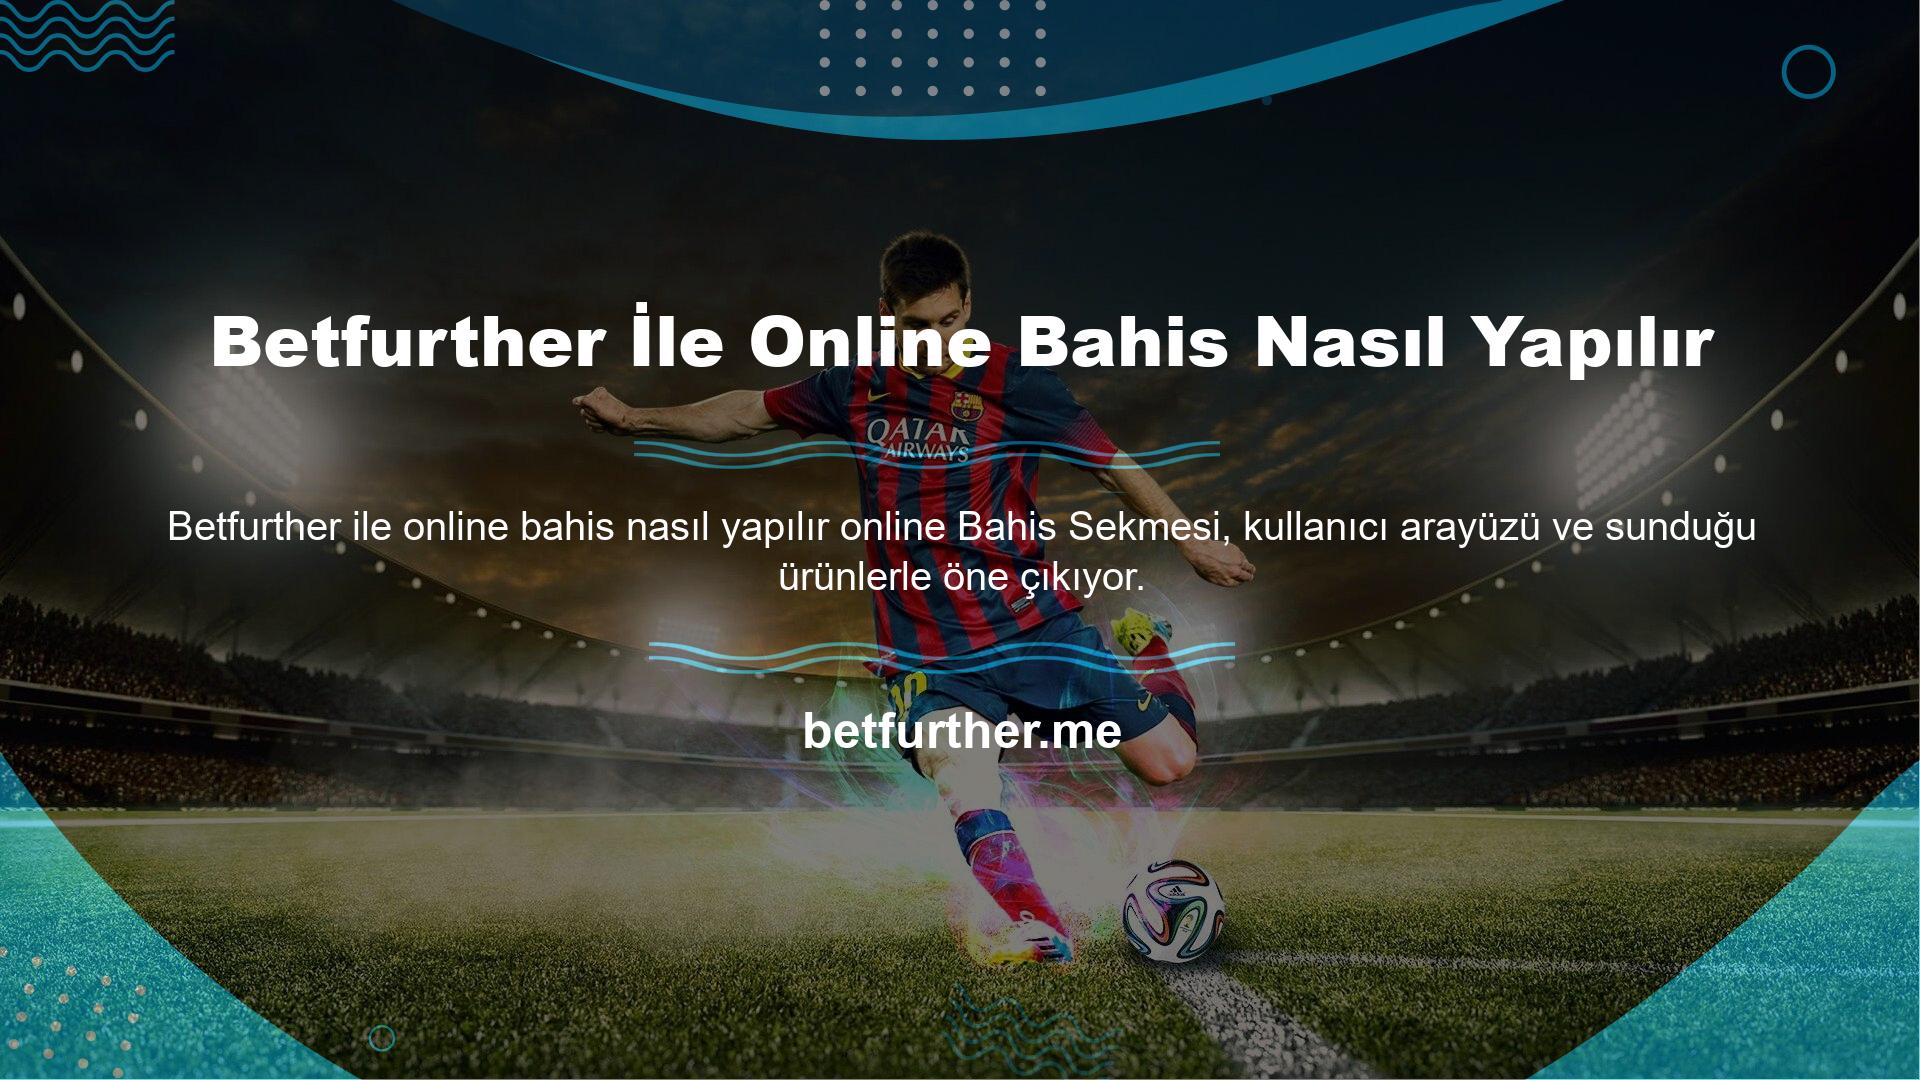 Betfurther çevrimiçi spor bahis tekliflerine ek olarak, bilgisayar oyunu turnuvalarında da çevrimiçi bahis oynamayı tercih edebilirsiniz